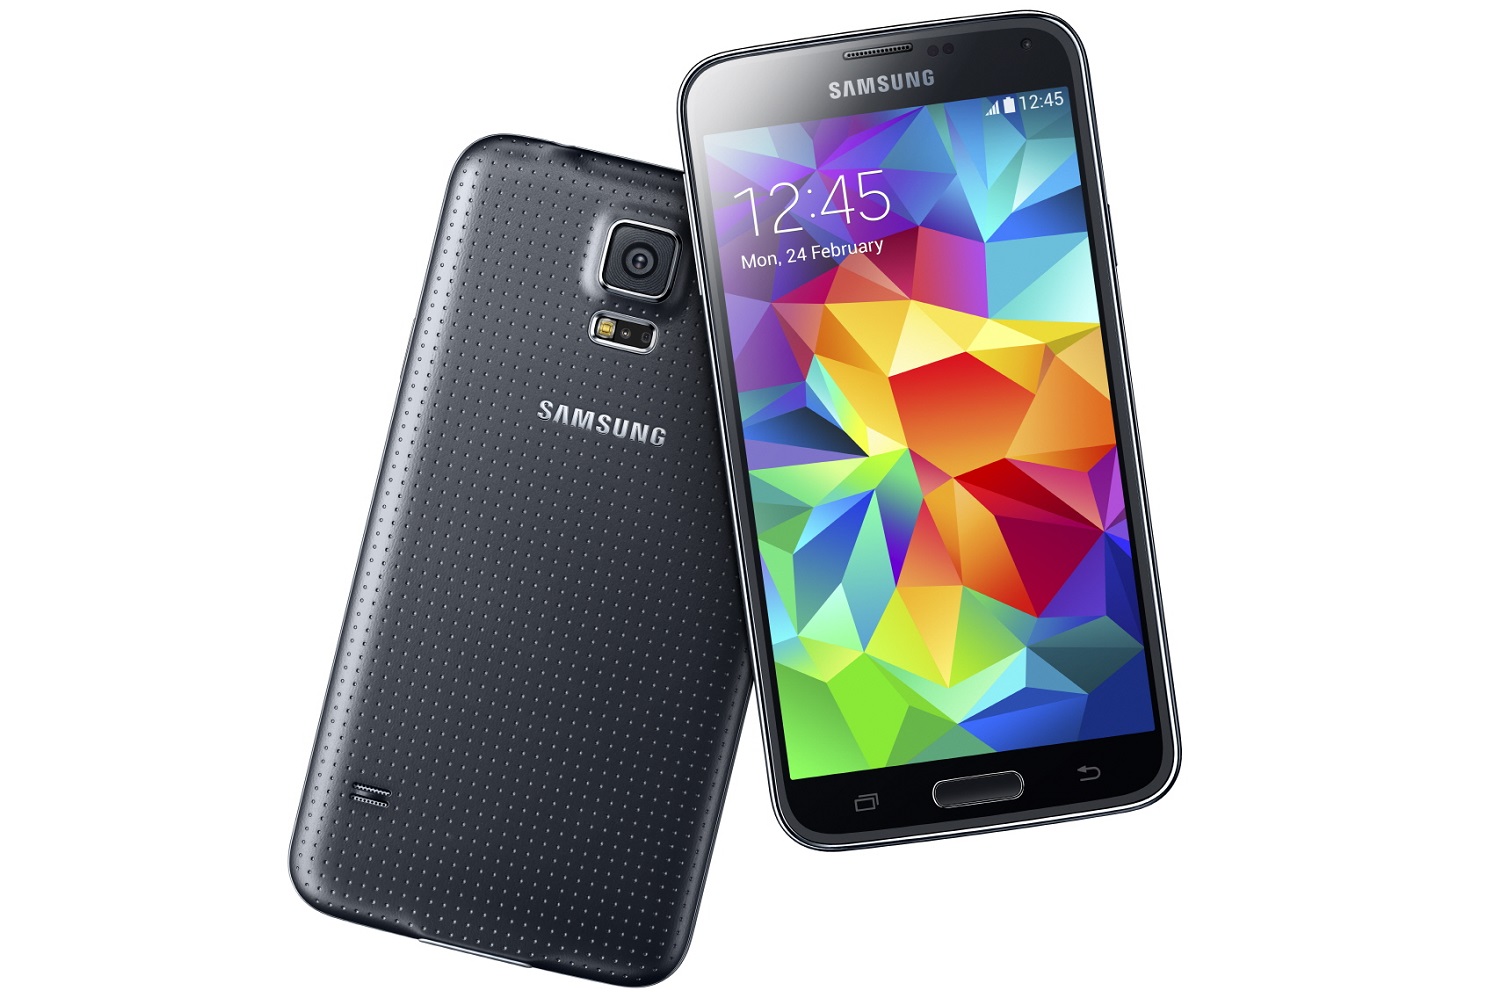 Galaxy S5 (Samsung)